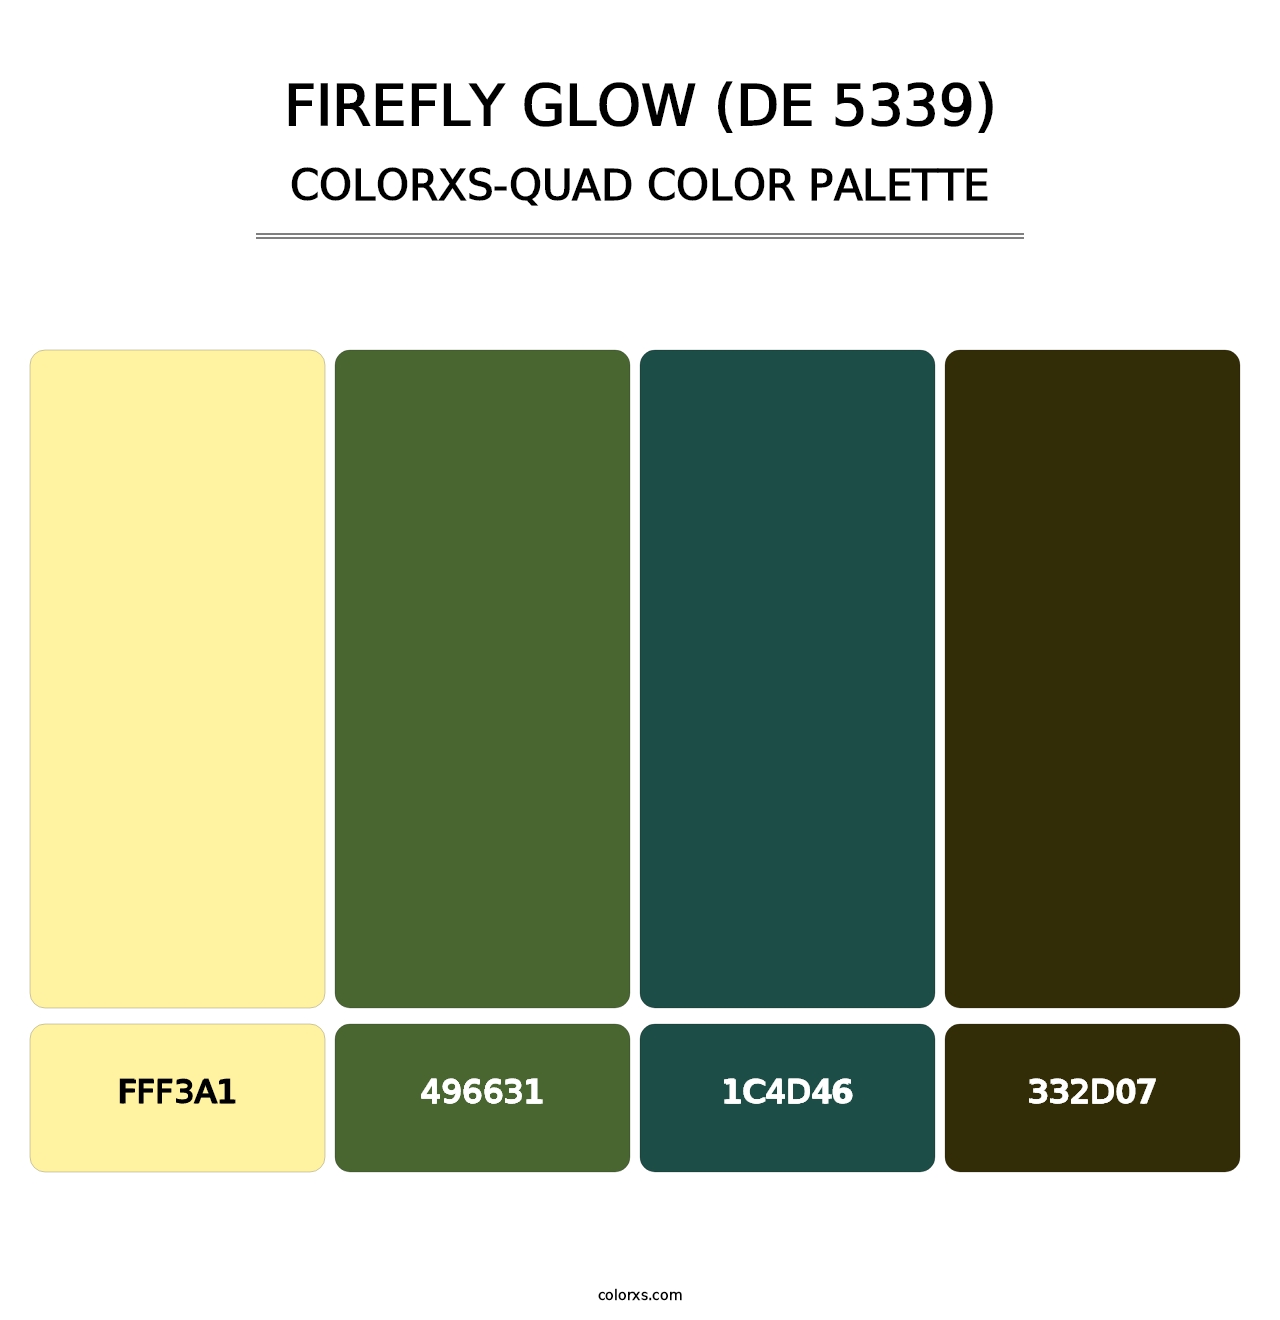 Firefly Glow (DE 5339) - Colorxs Quad Palette